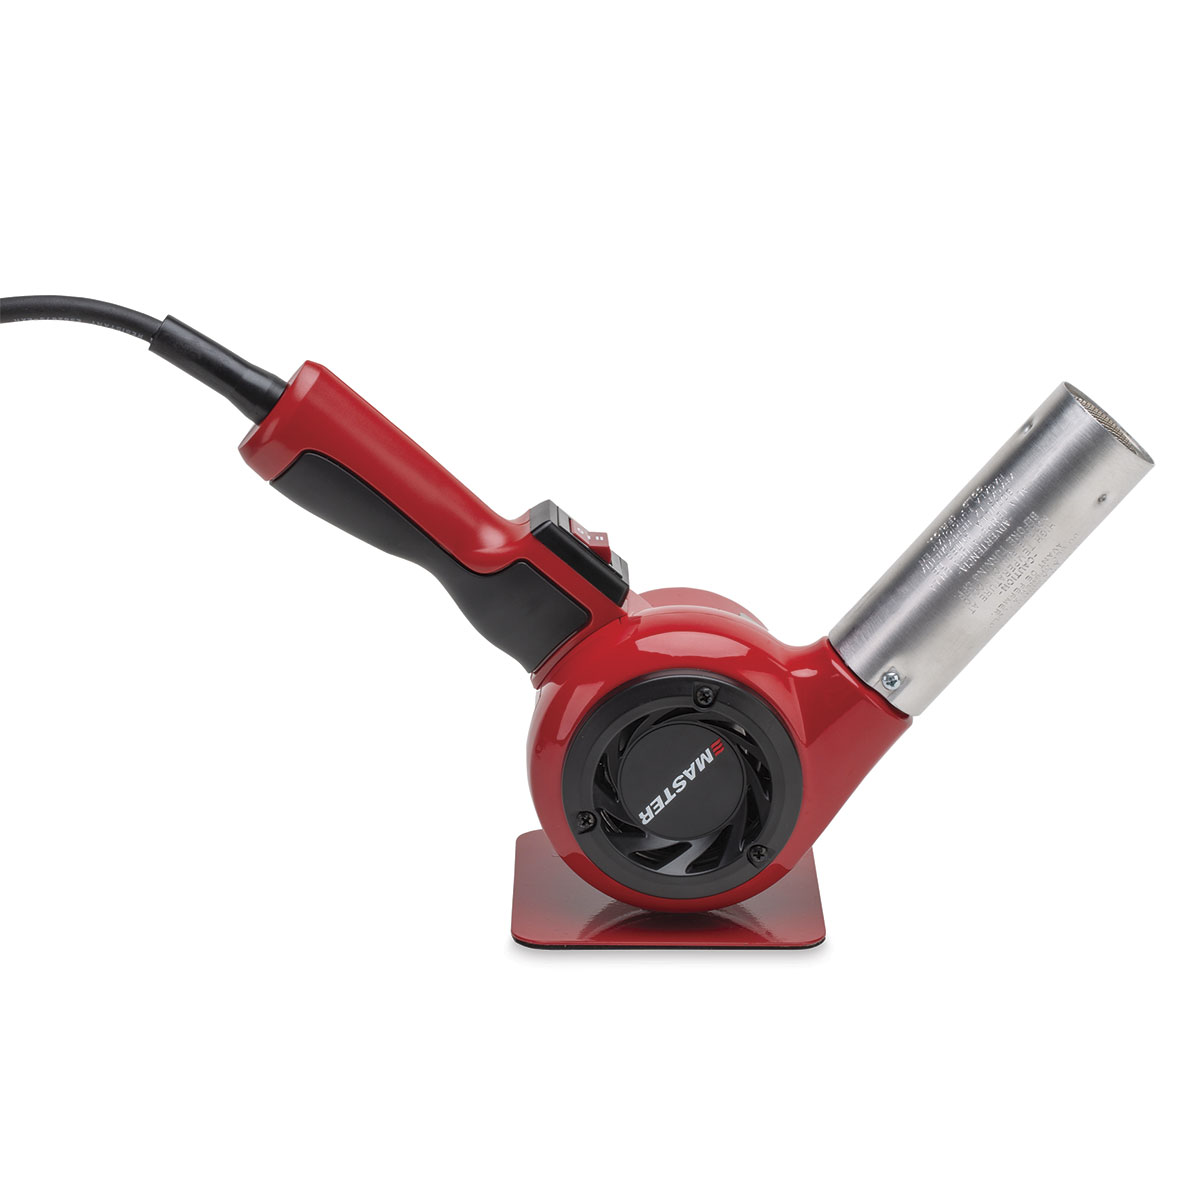 Bubble Buster Tool Mini Heat Gun – 300 Watt Dual-Temperature Heat